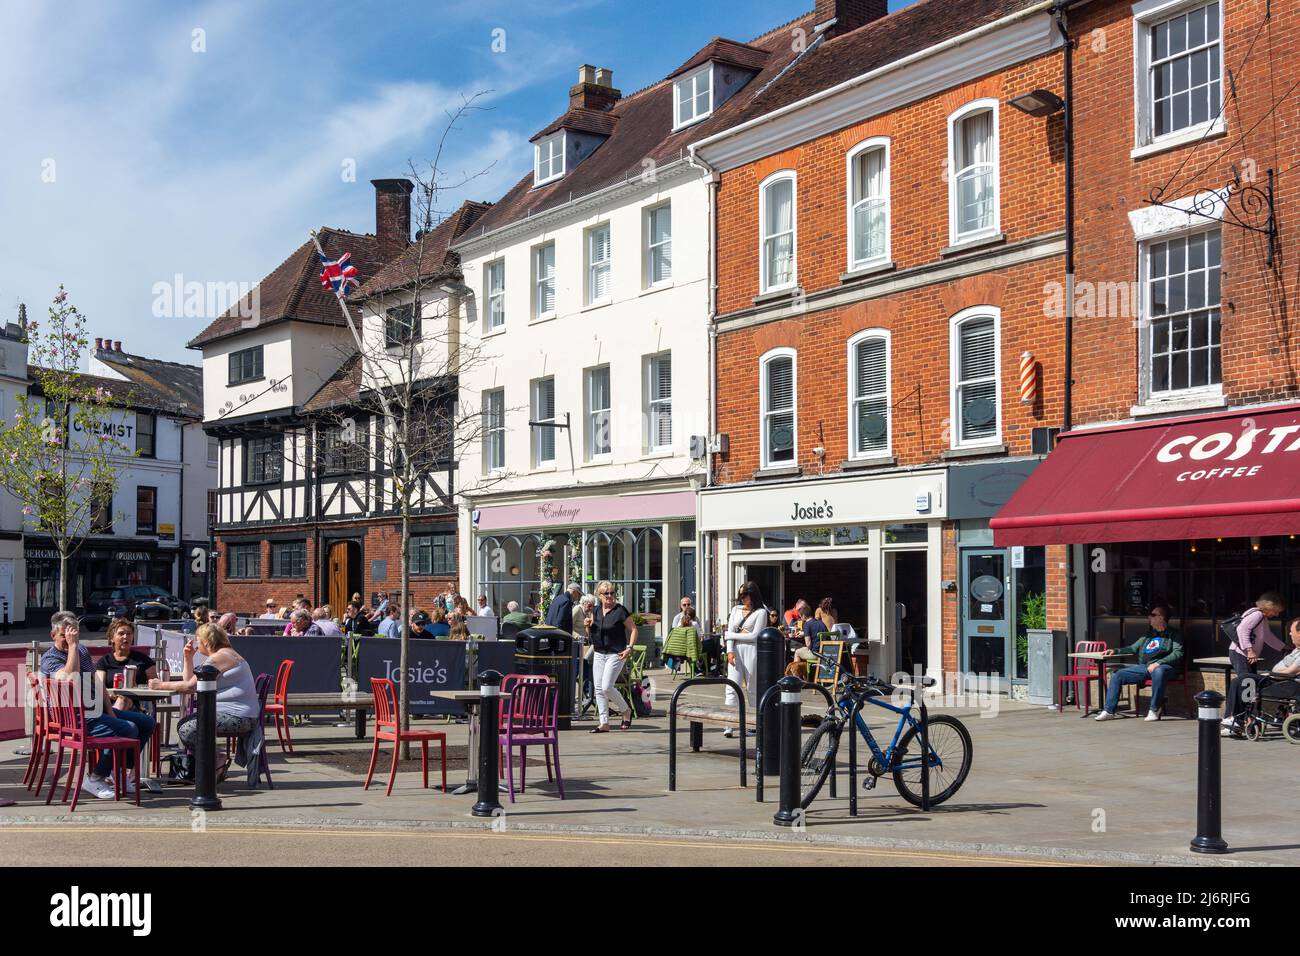 Pavement cafes, Market Place, Romsey, Hampshire, England, United Kingdom Stock Photo